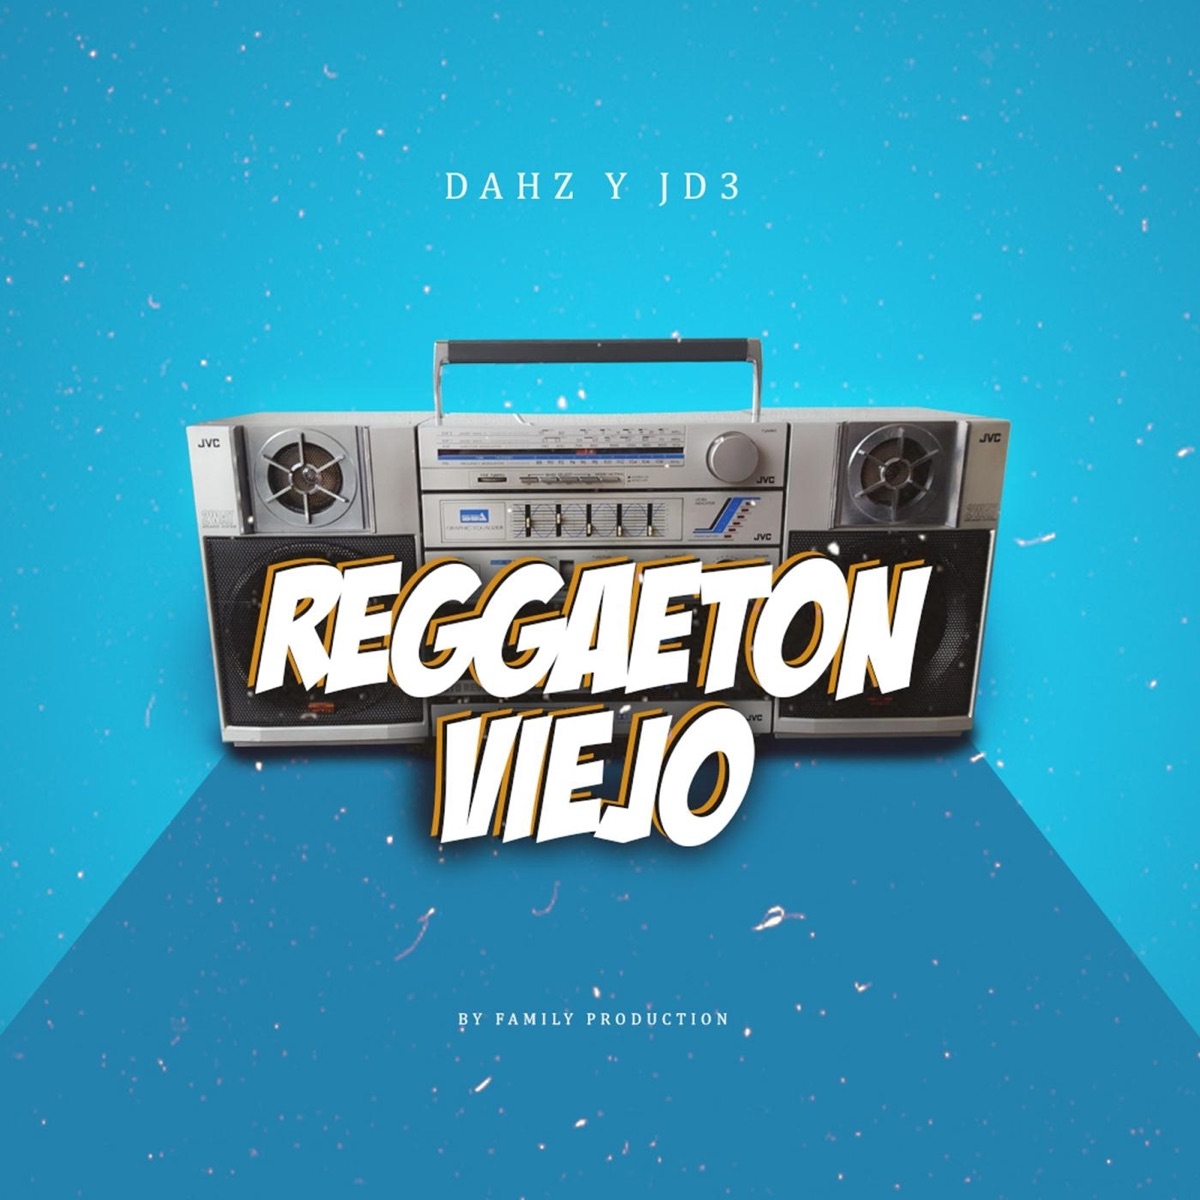 Reggaeton Viejo - Single” álbum de Dahz y Jd3 en Apple Music